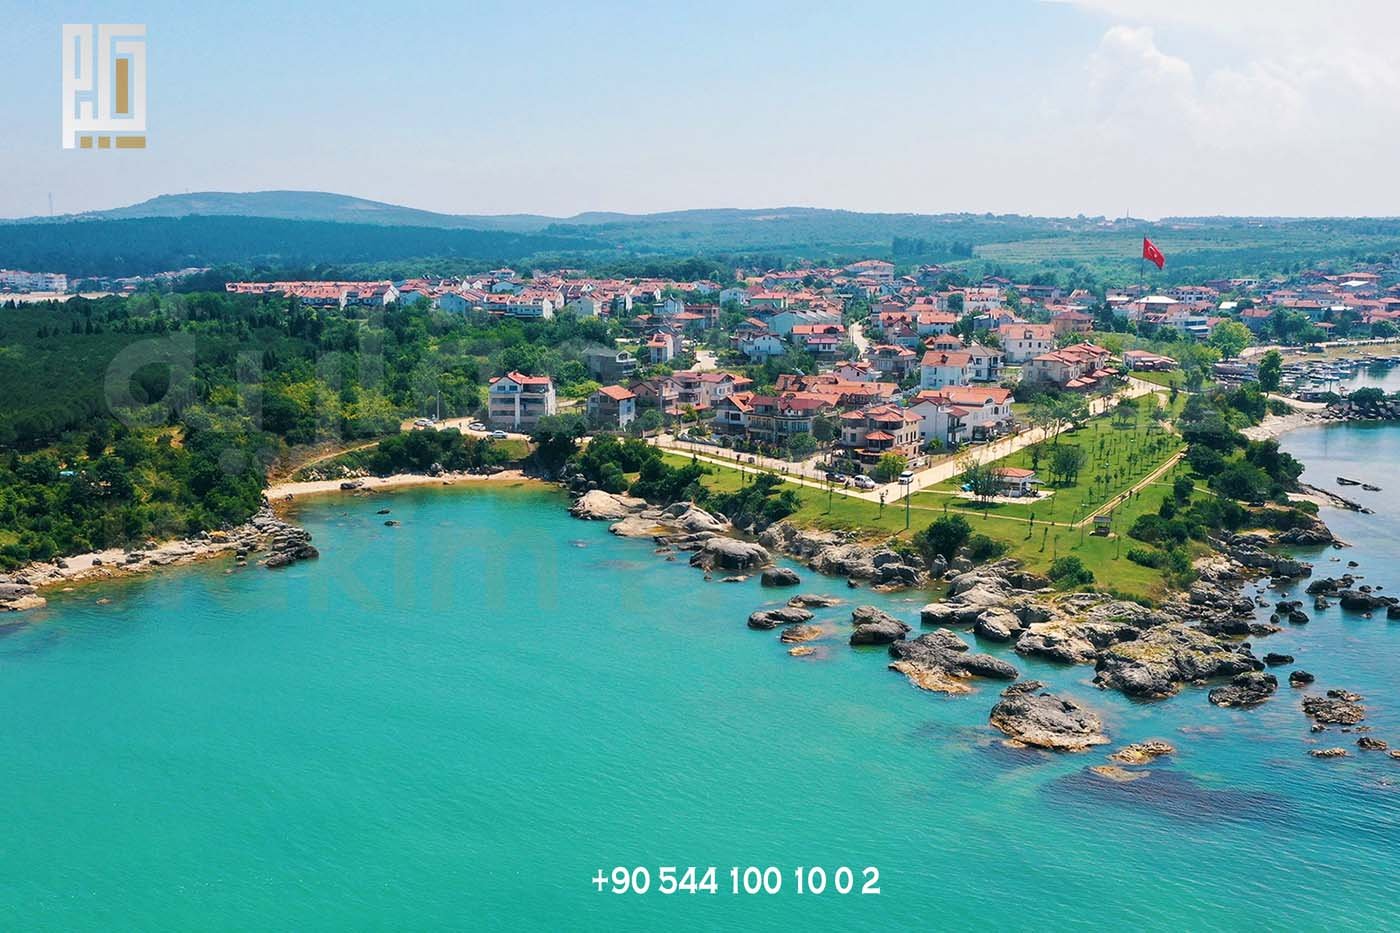 Meilleur endroit pour acheter un appartement en Turquie Kocaeli